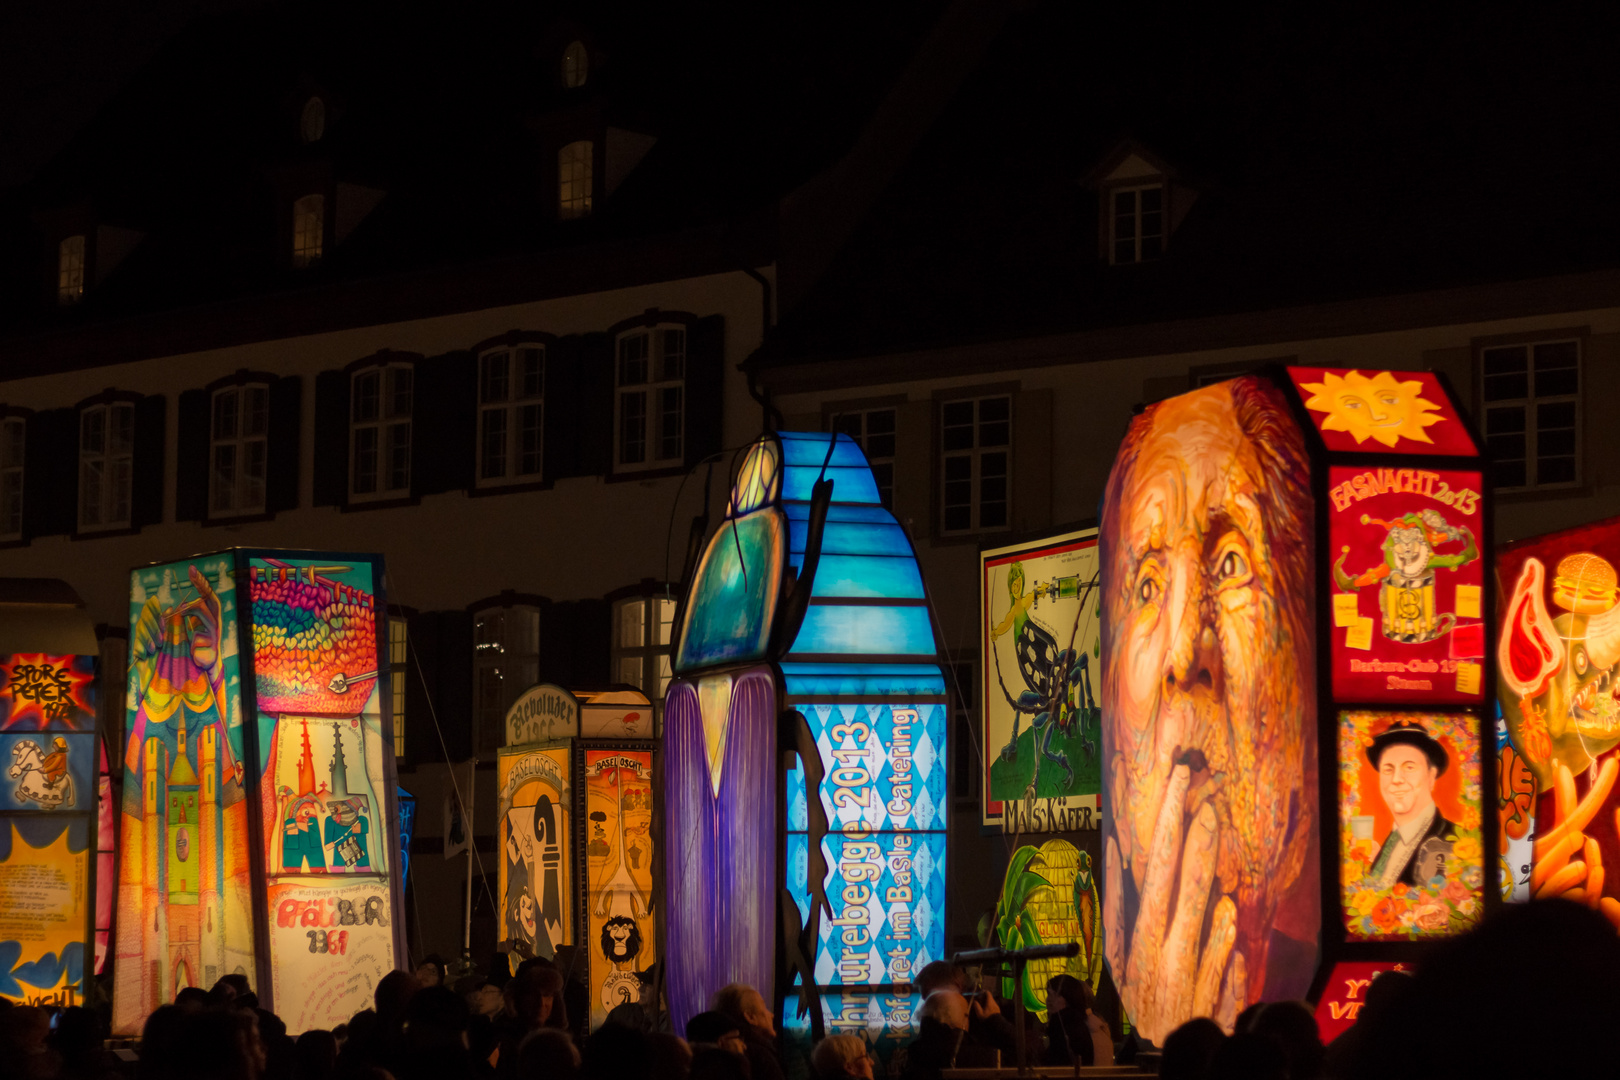 Laternenausstellung auf dem Münsterplatz in der Nacht an der Basler Fasnacht 2013